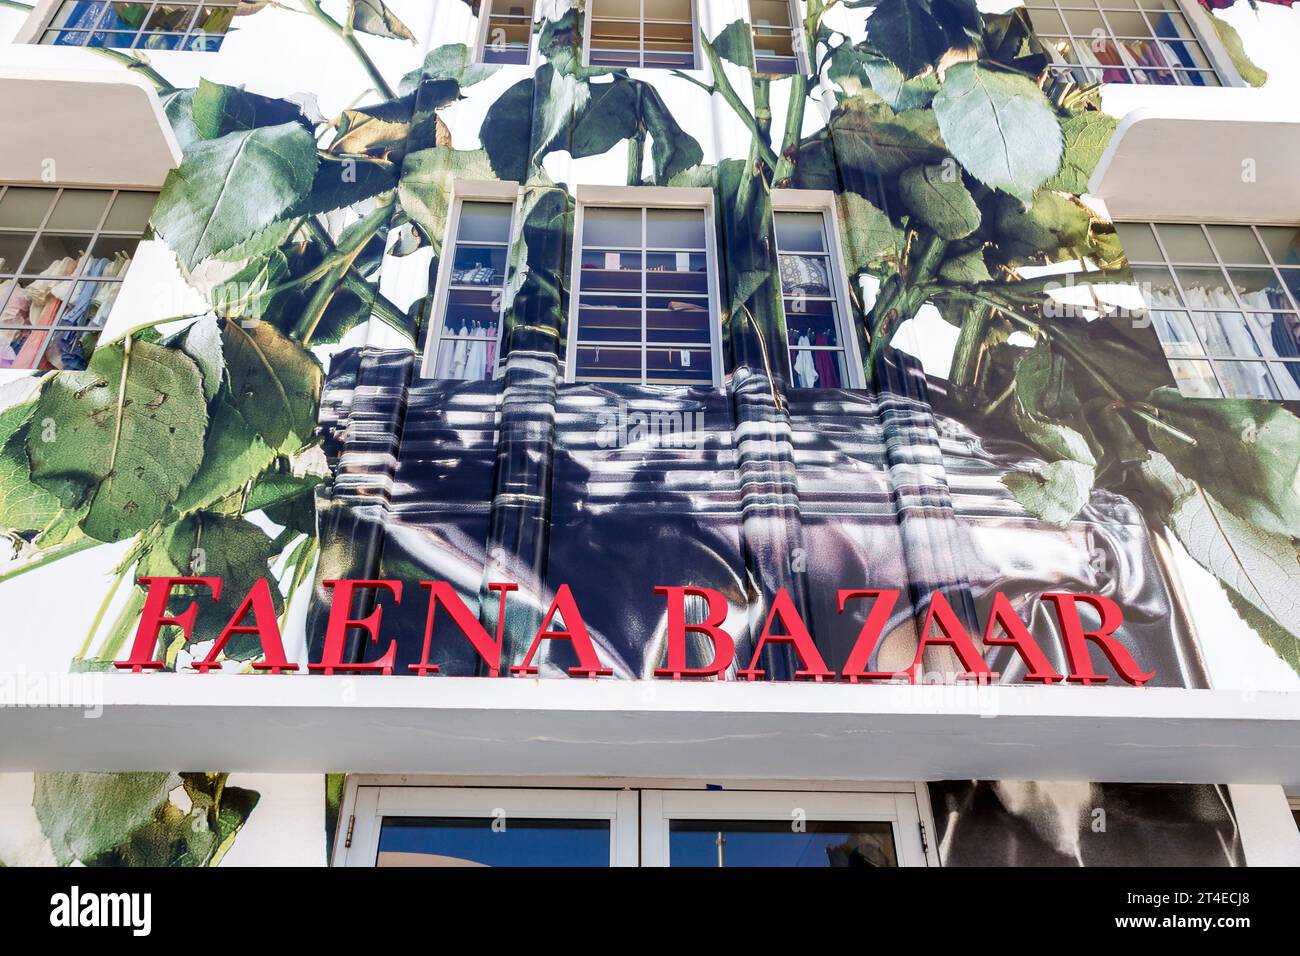 Miami Beach Florida,outside exterior,building front entrance,Collins Avenue,Faena Bazaar,event shopping venue sign Stock Photo